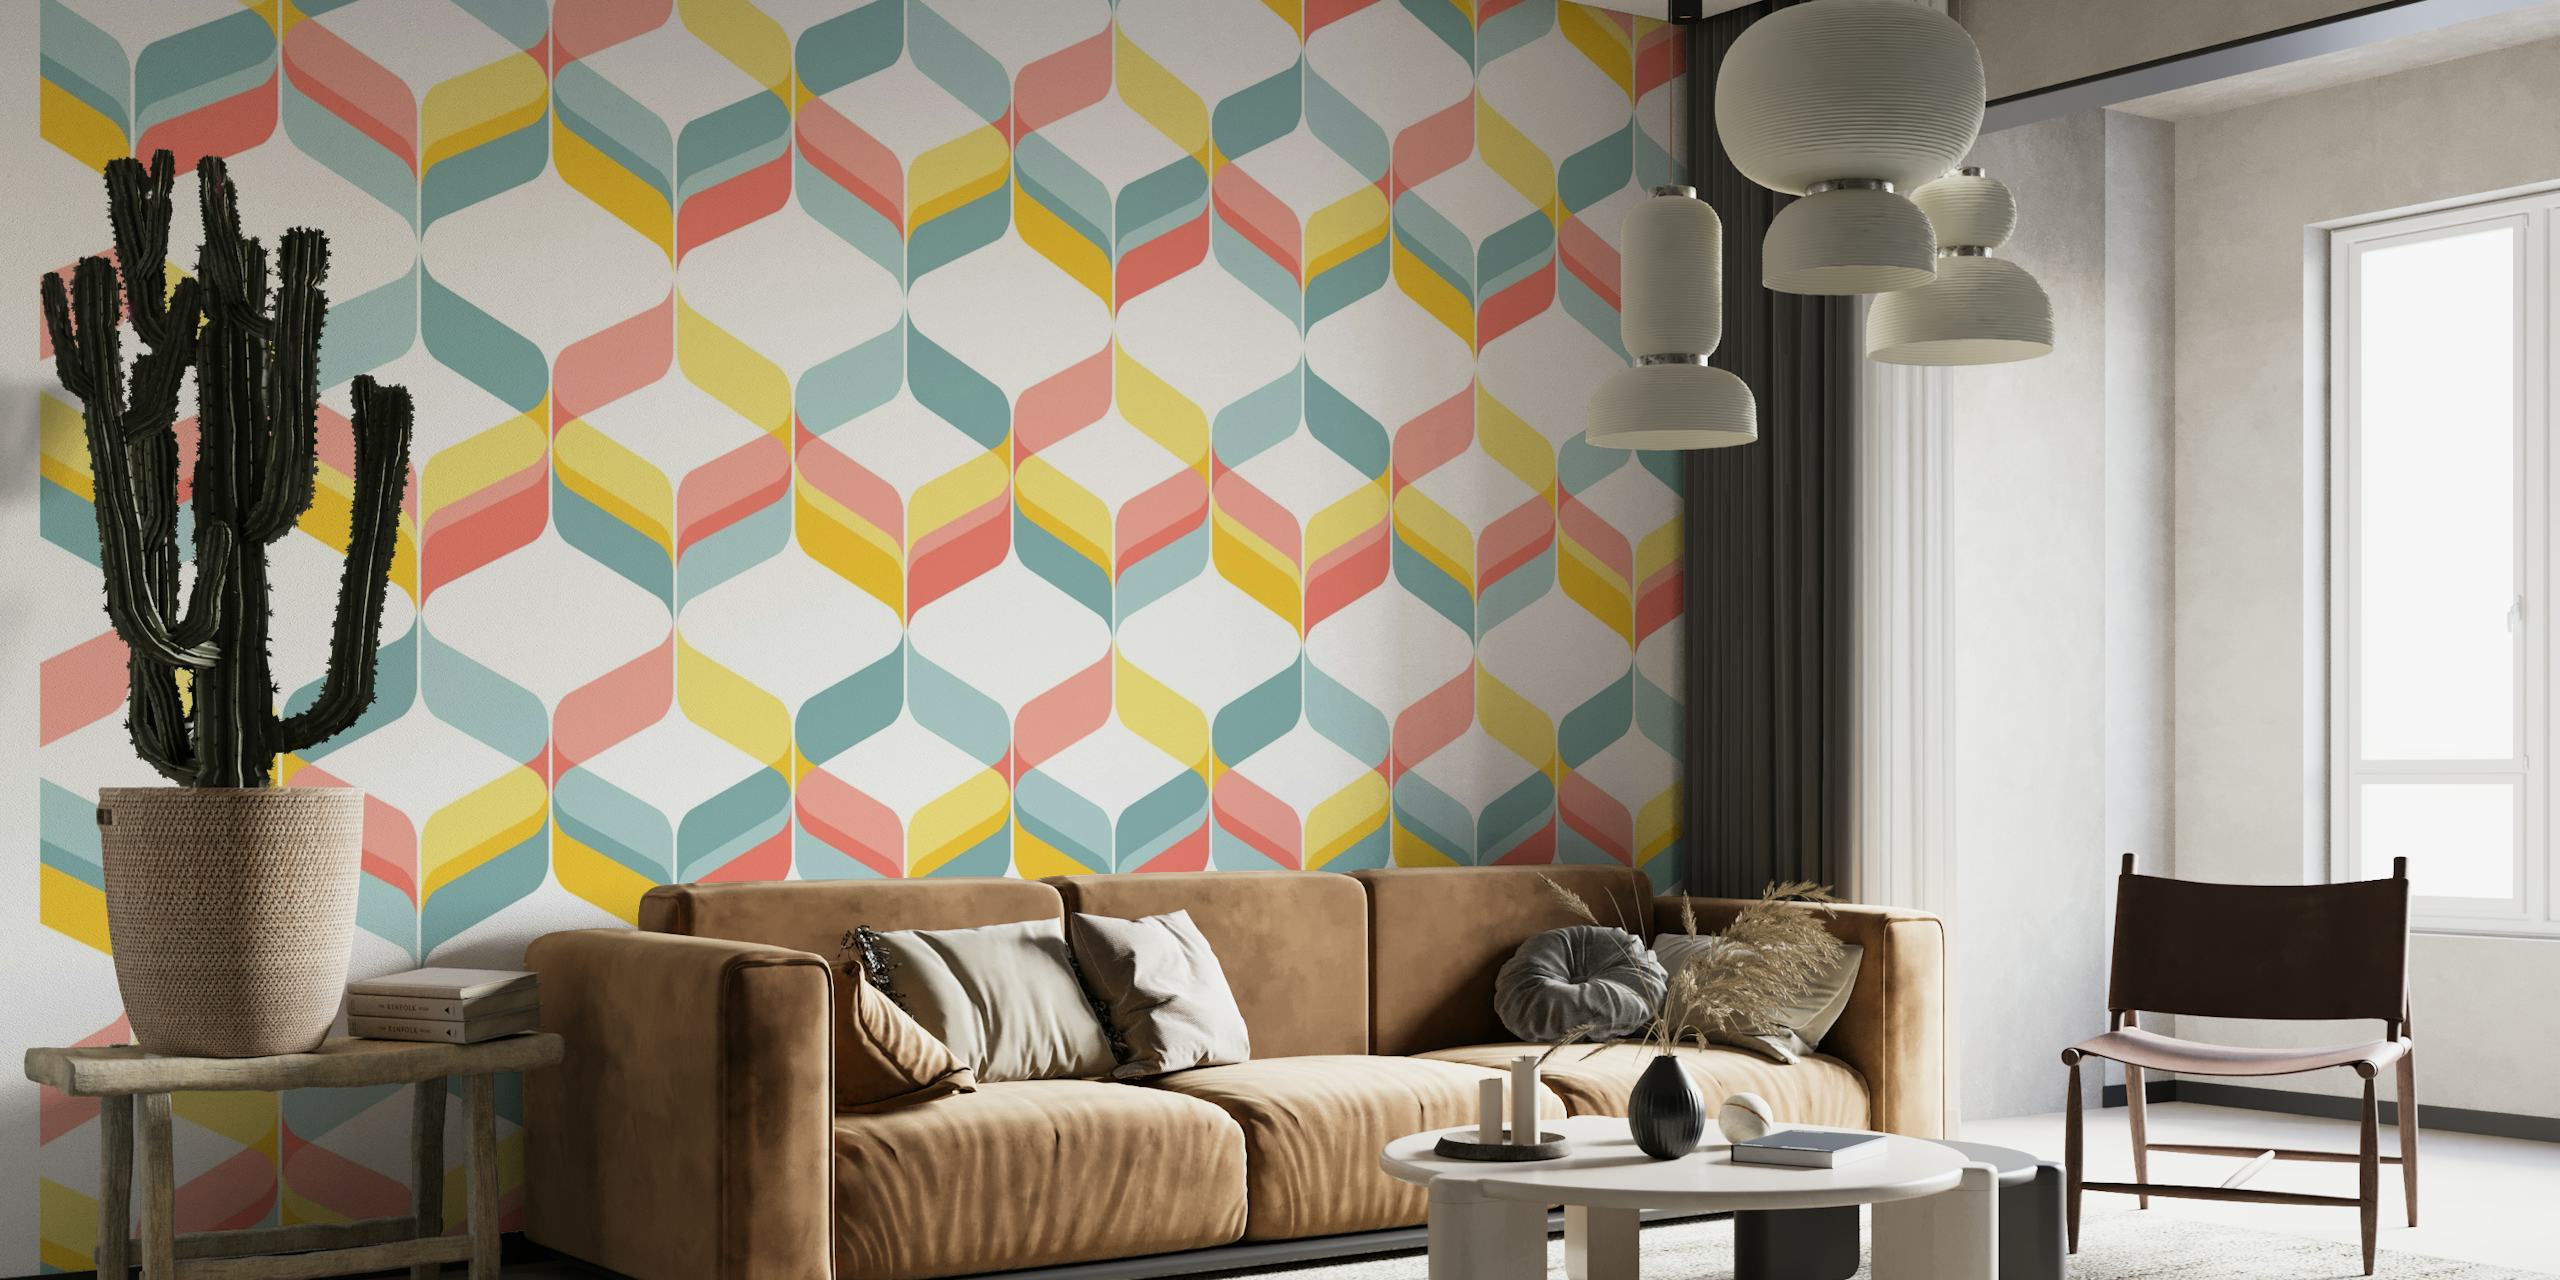 Fotomural de pared con cintas geométricas en tonos pastel y diseño mod retro